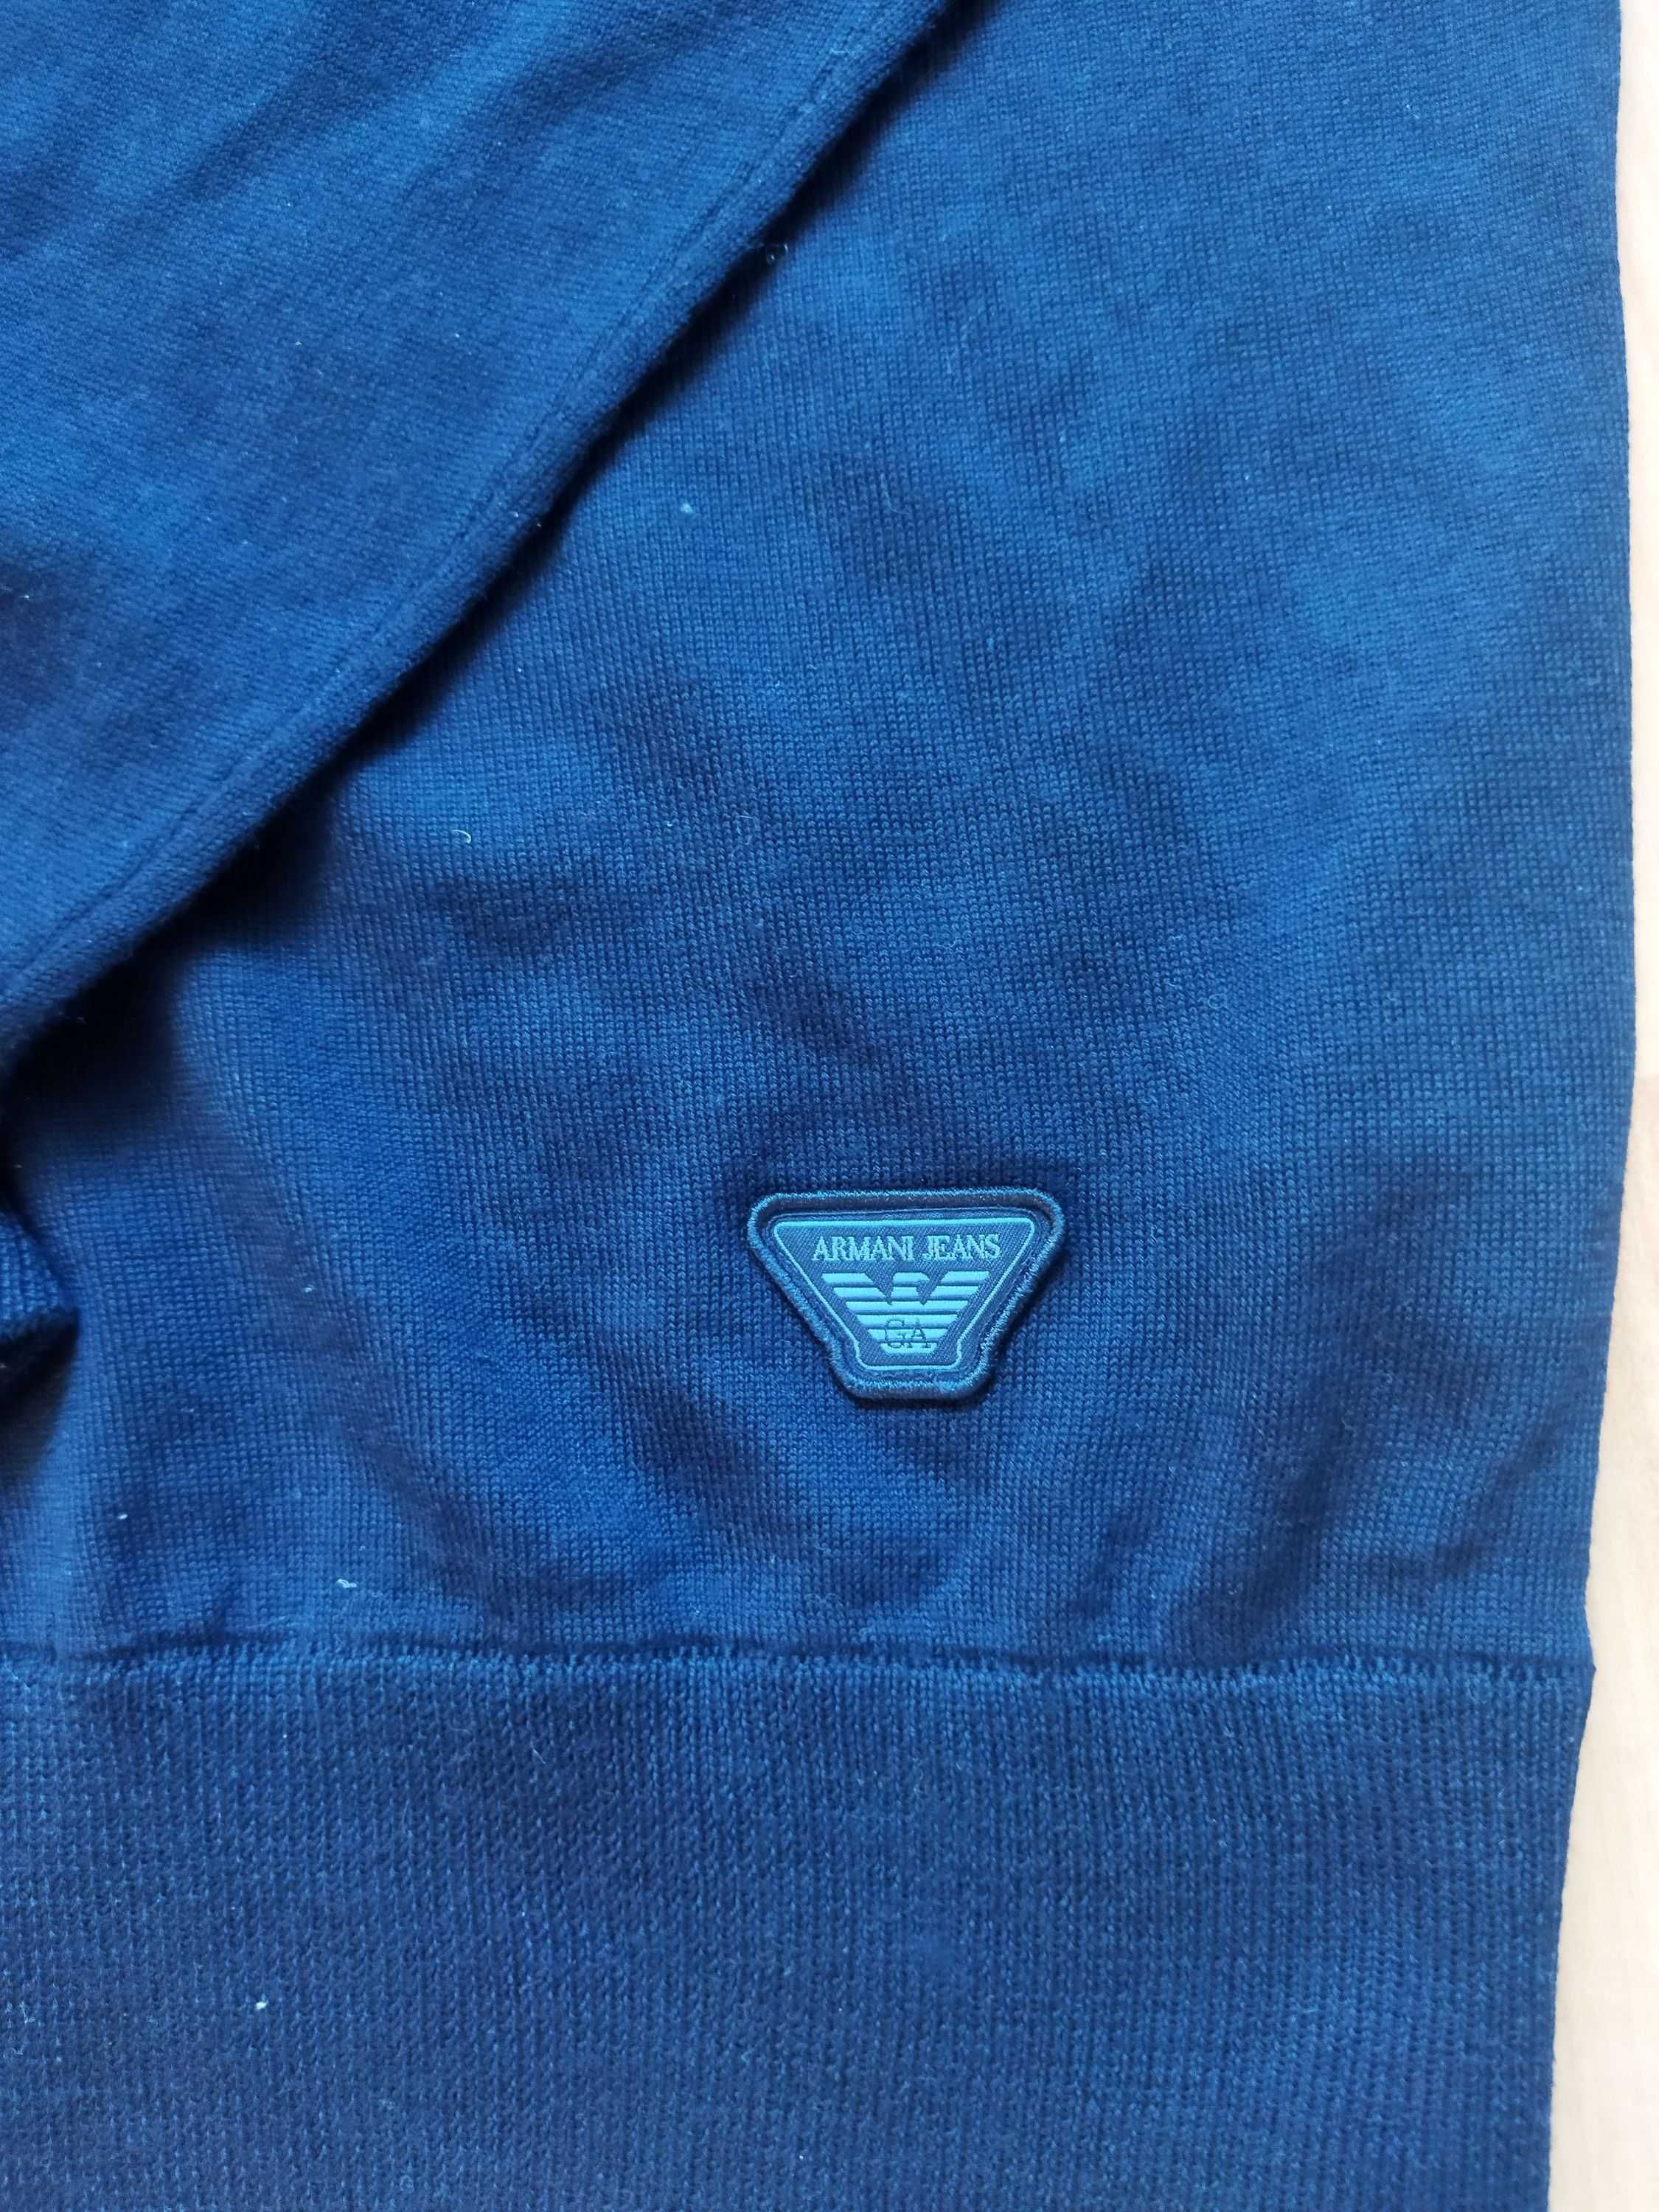 Свитер-пуловер Giorgio Armani (Италия),шерсть,оригинал,новый,р-р 46